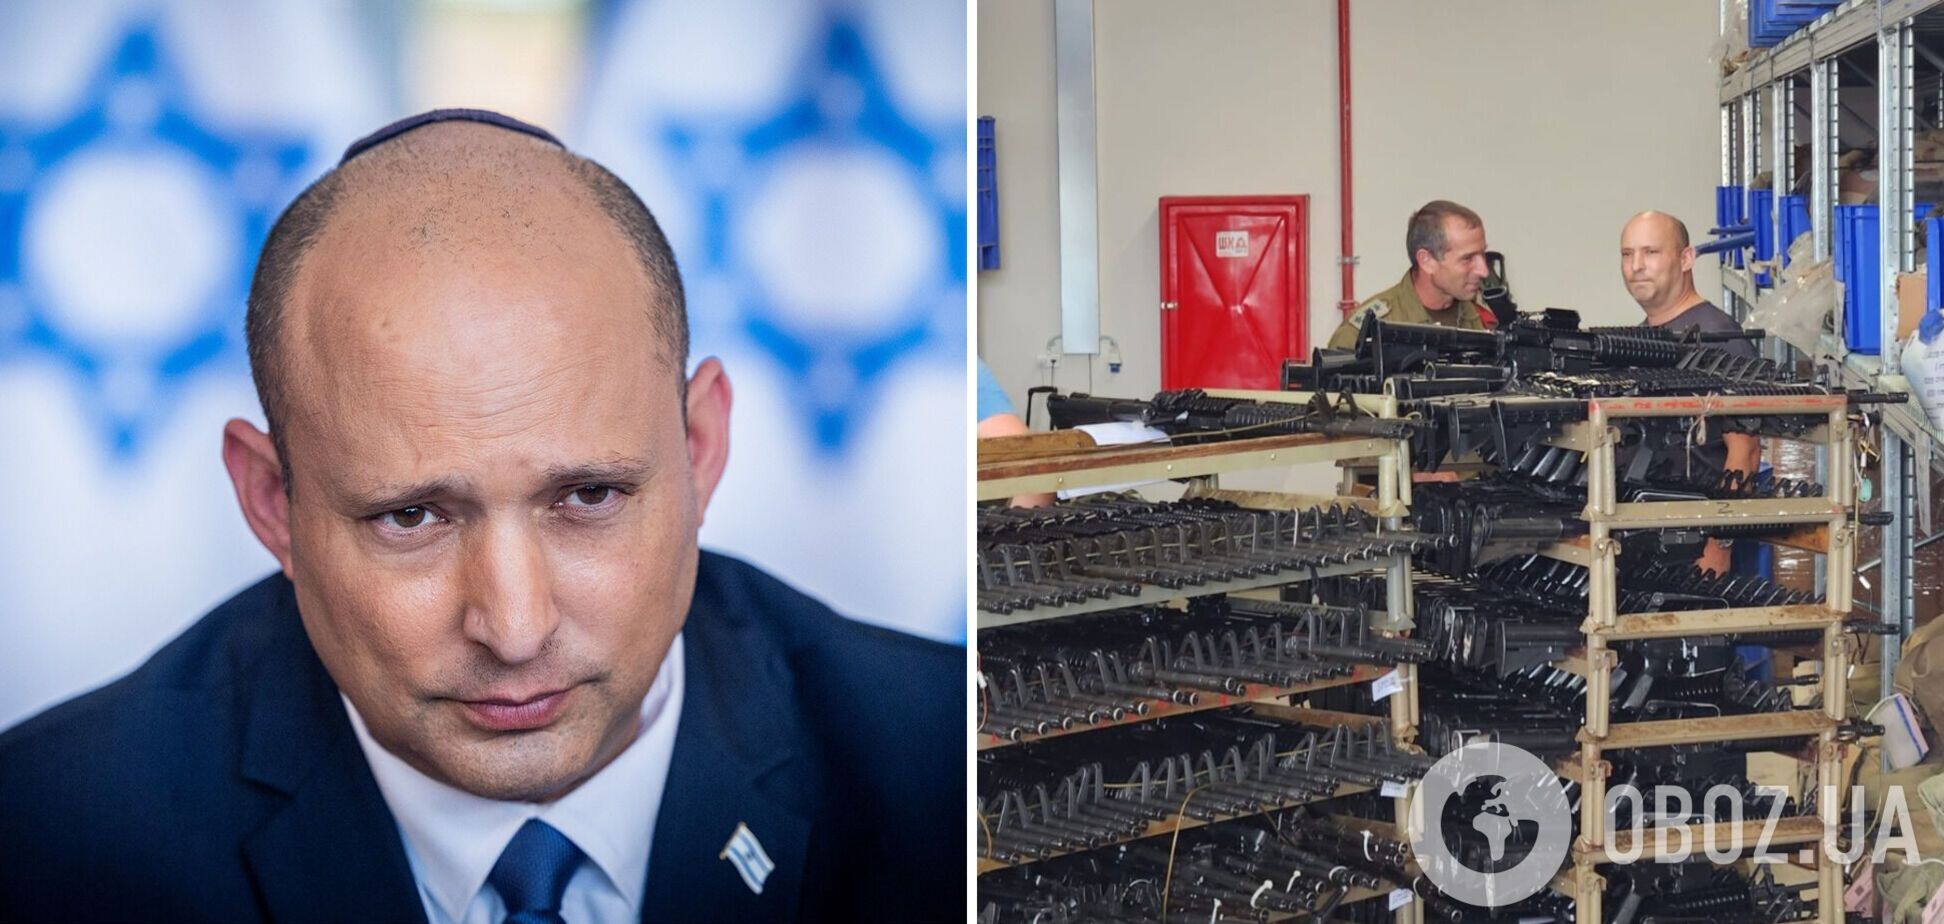 Бывший премьер-министр Израиля записался добровольцем в ЦАХАЛ: где он будет служить